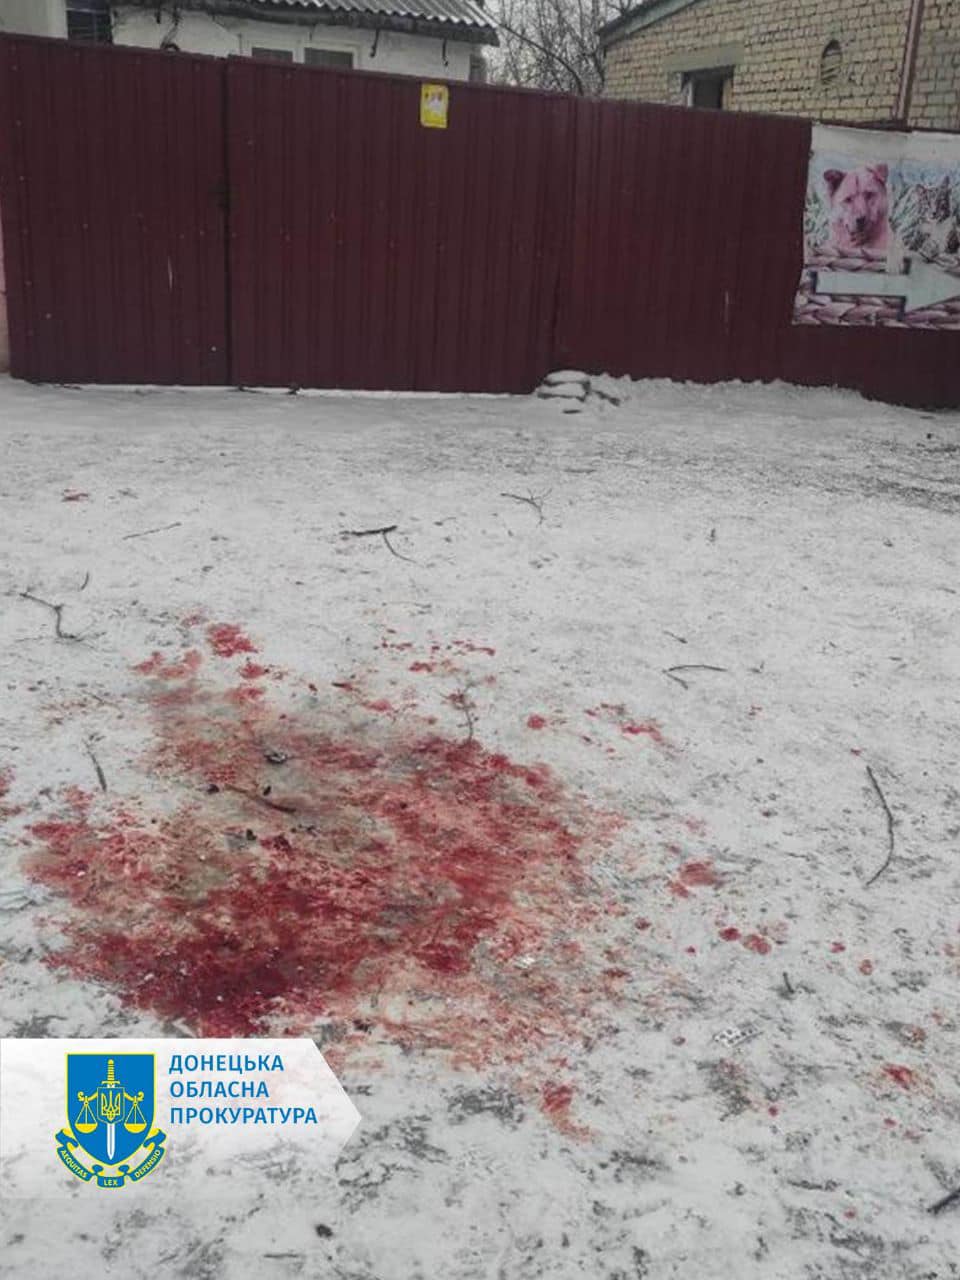 Житель Красногорівки звинуватив продавця у неякісному товарі та кинув у нього гранату: травмувалися 5 людей, загинув перехожий 2